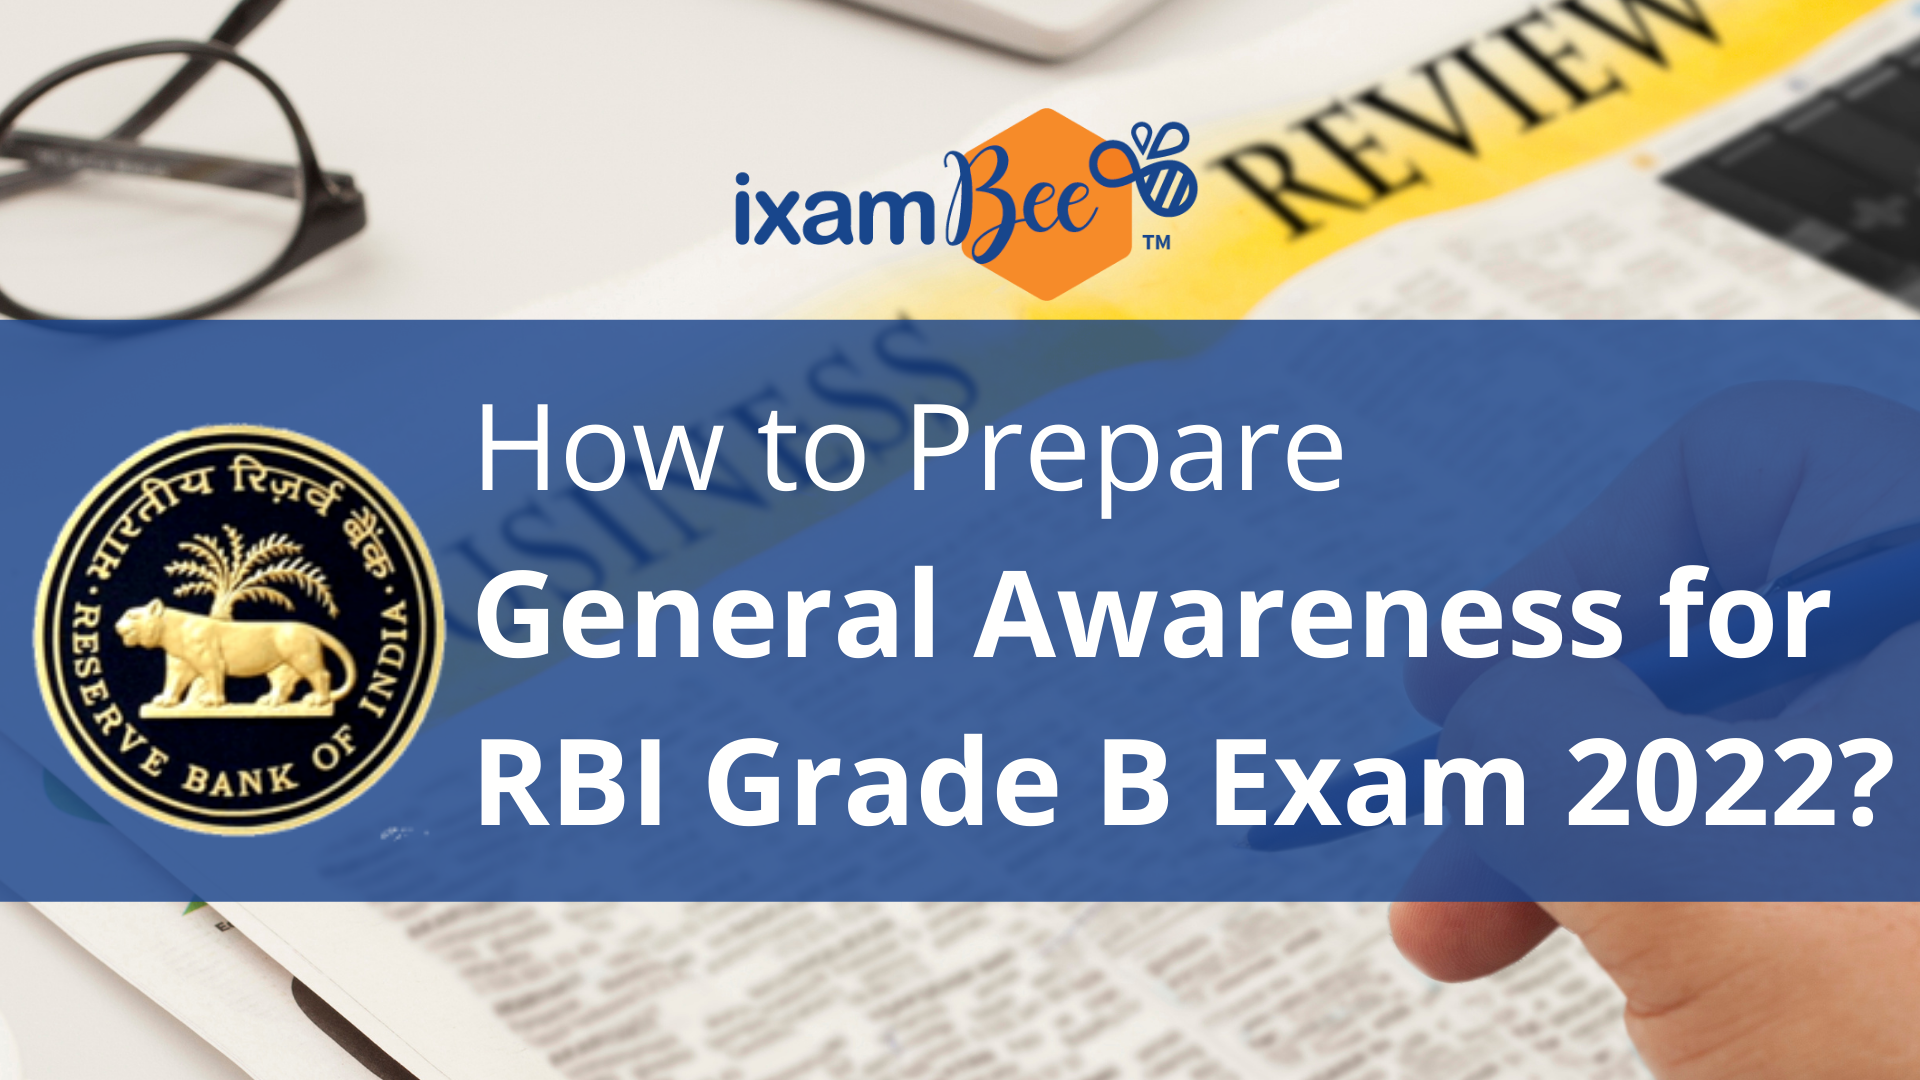 How to Prepare General Awareness for RBI Grade B Exam 2022?